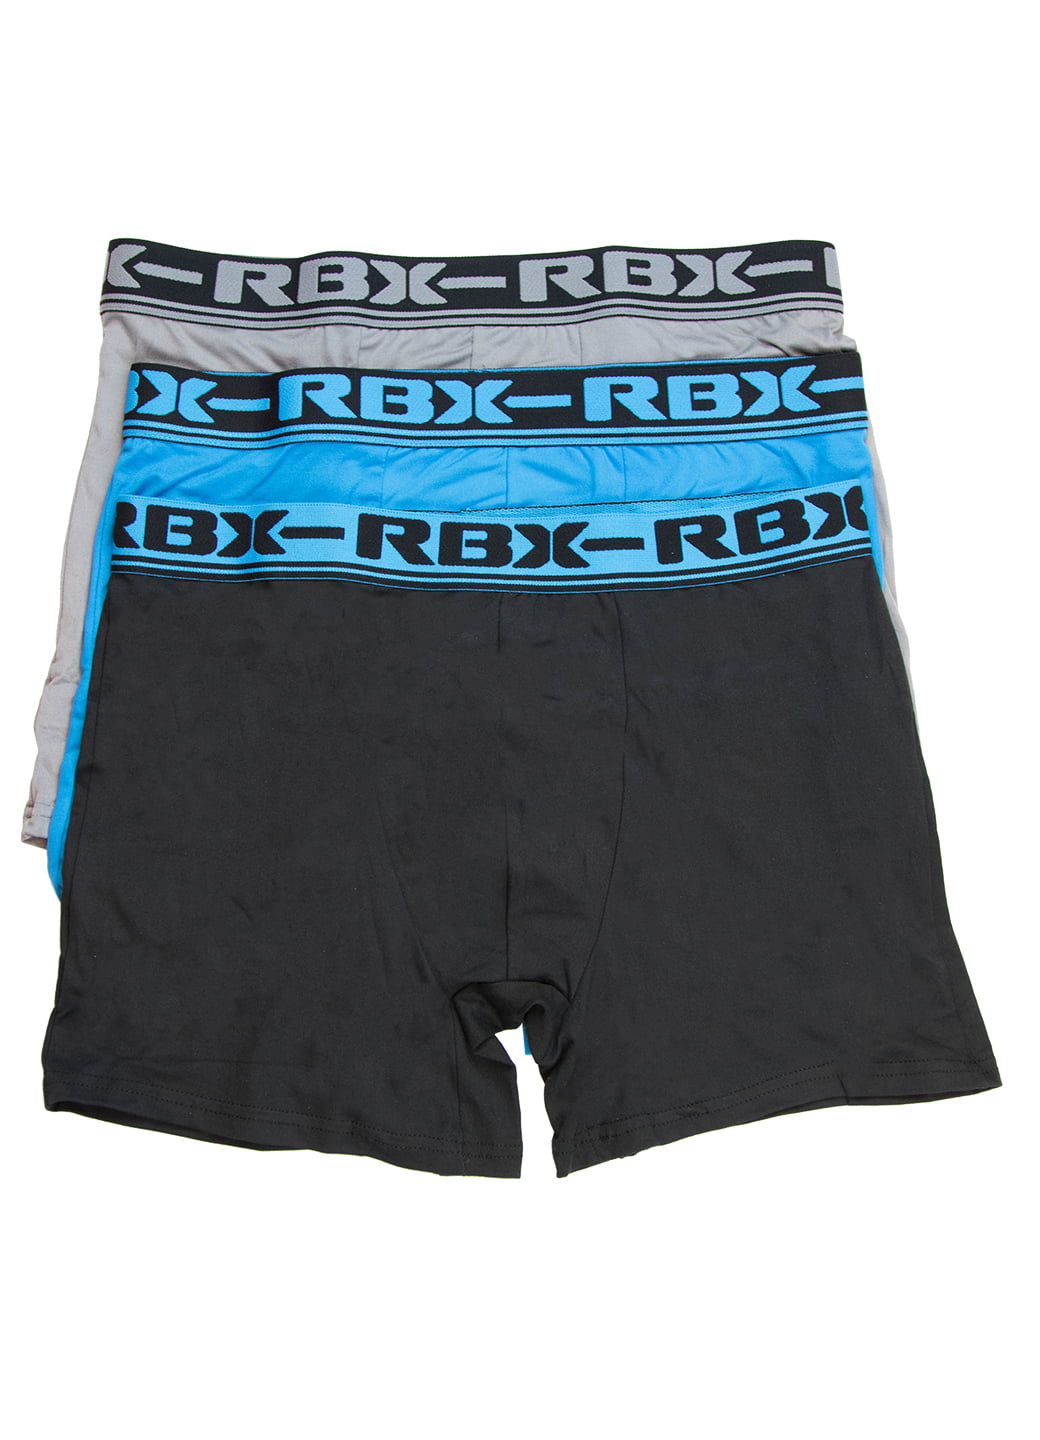 rbx mens underwear online discount